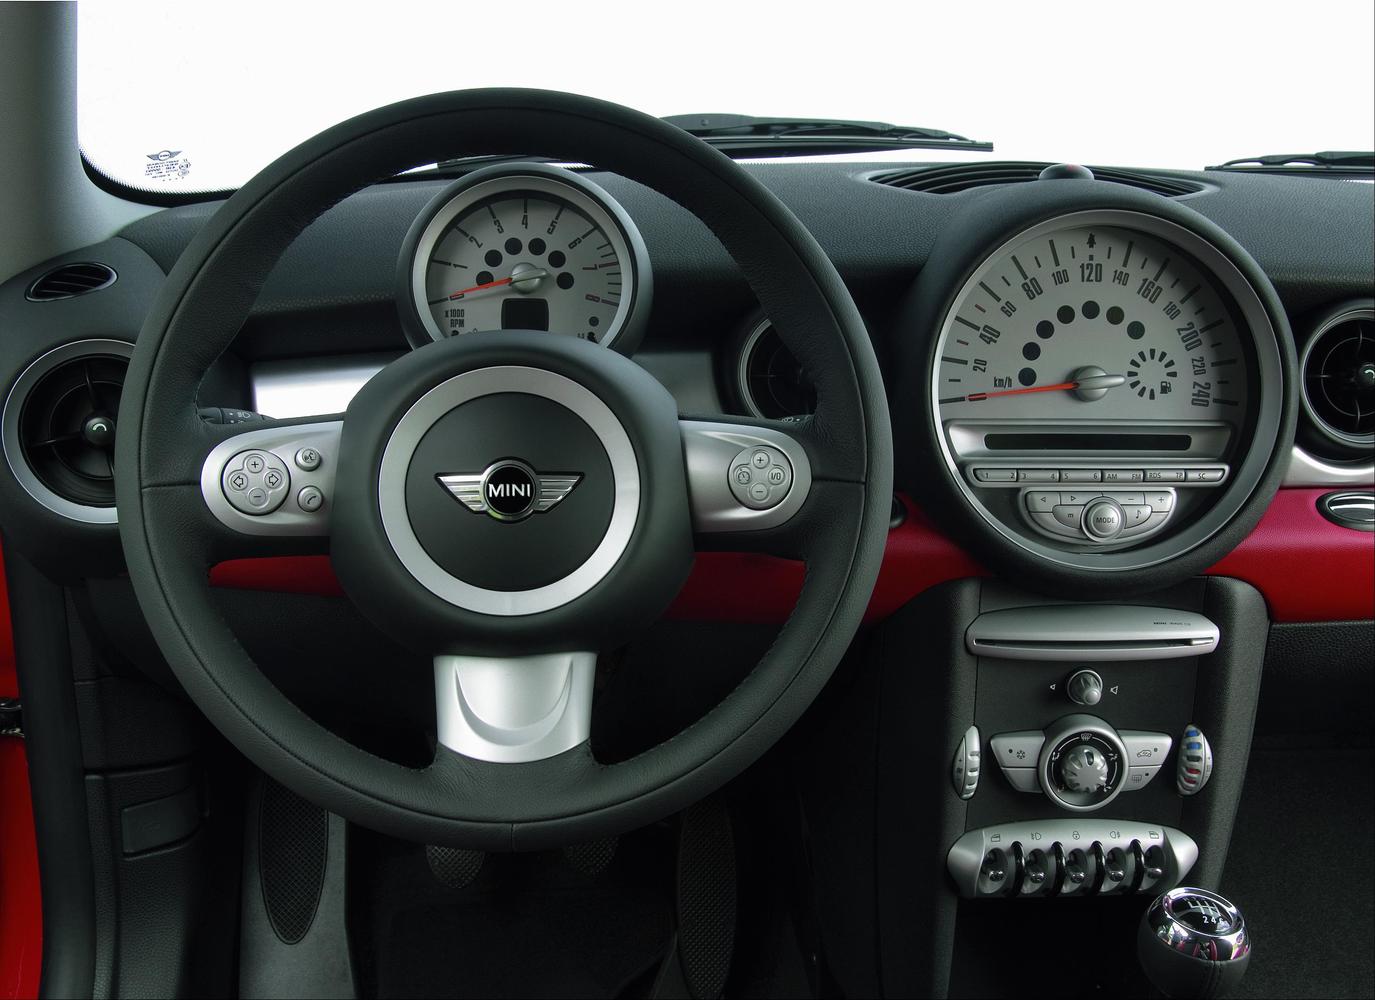 универсал Cooper S MINI Clubman 2007 - 2010г выпуска модификация 2.0 AT (143 л.с.)